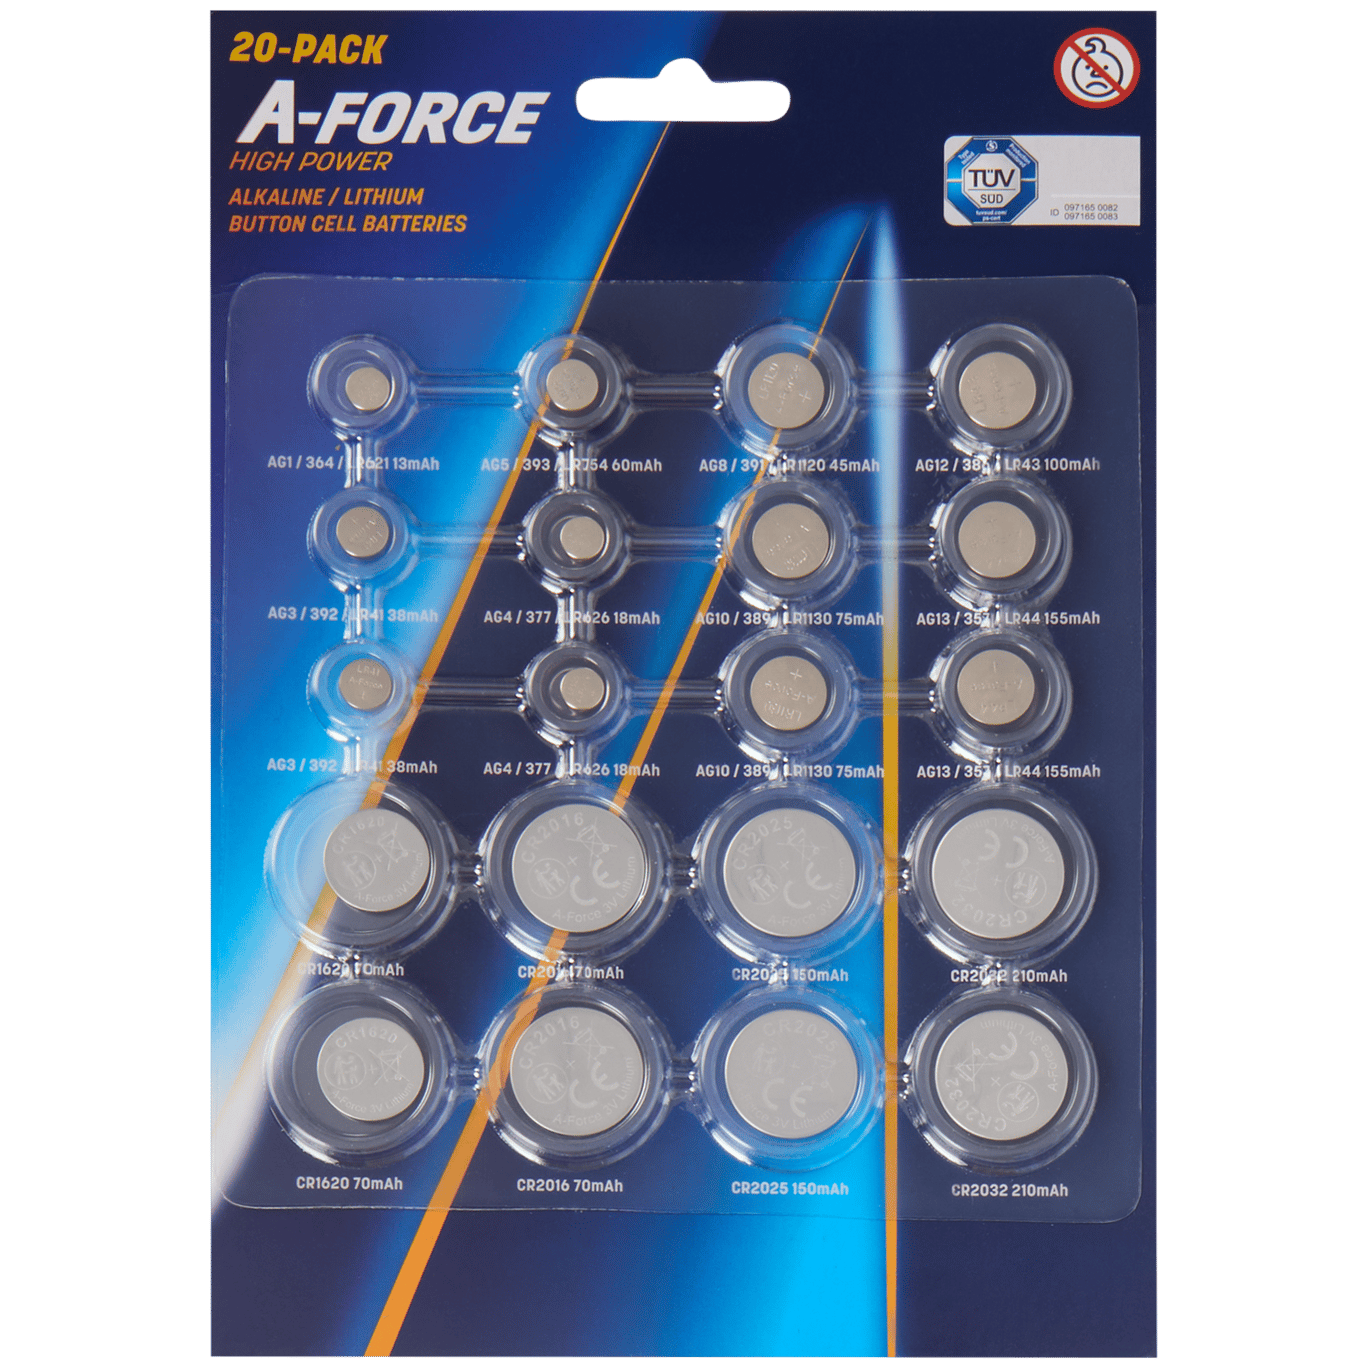 Baterie litowe guzikowe A-Force